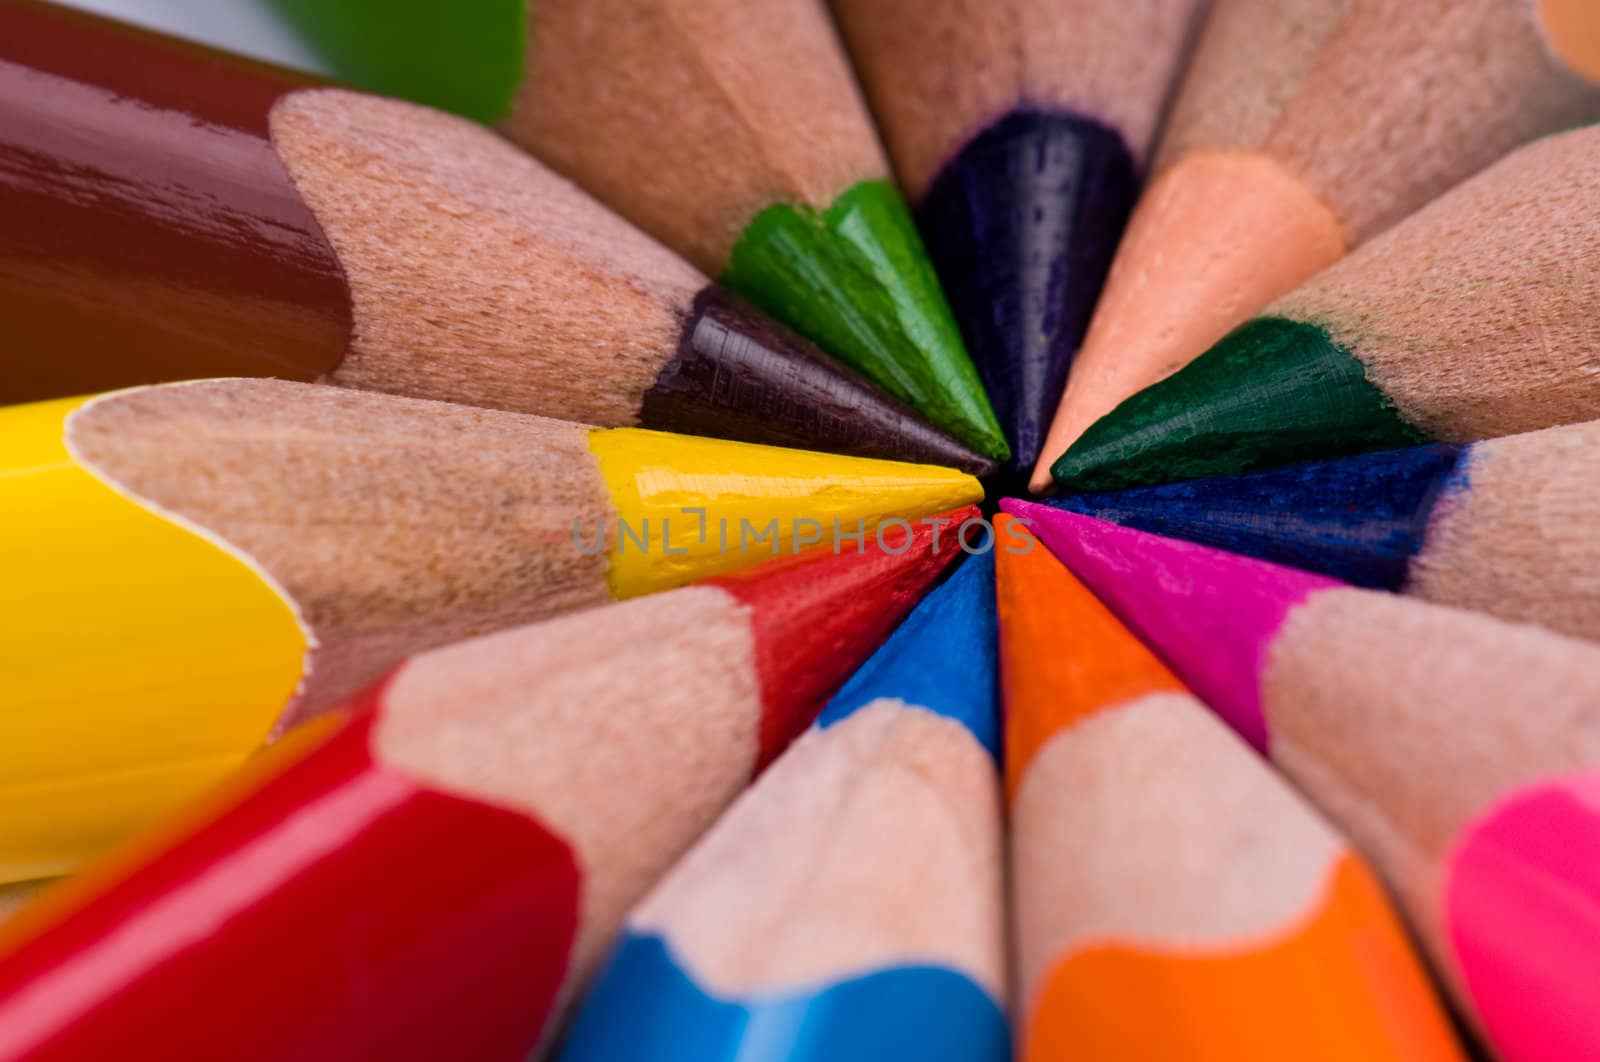 Multicolor pencils by fotostok_pdv